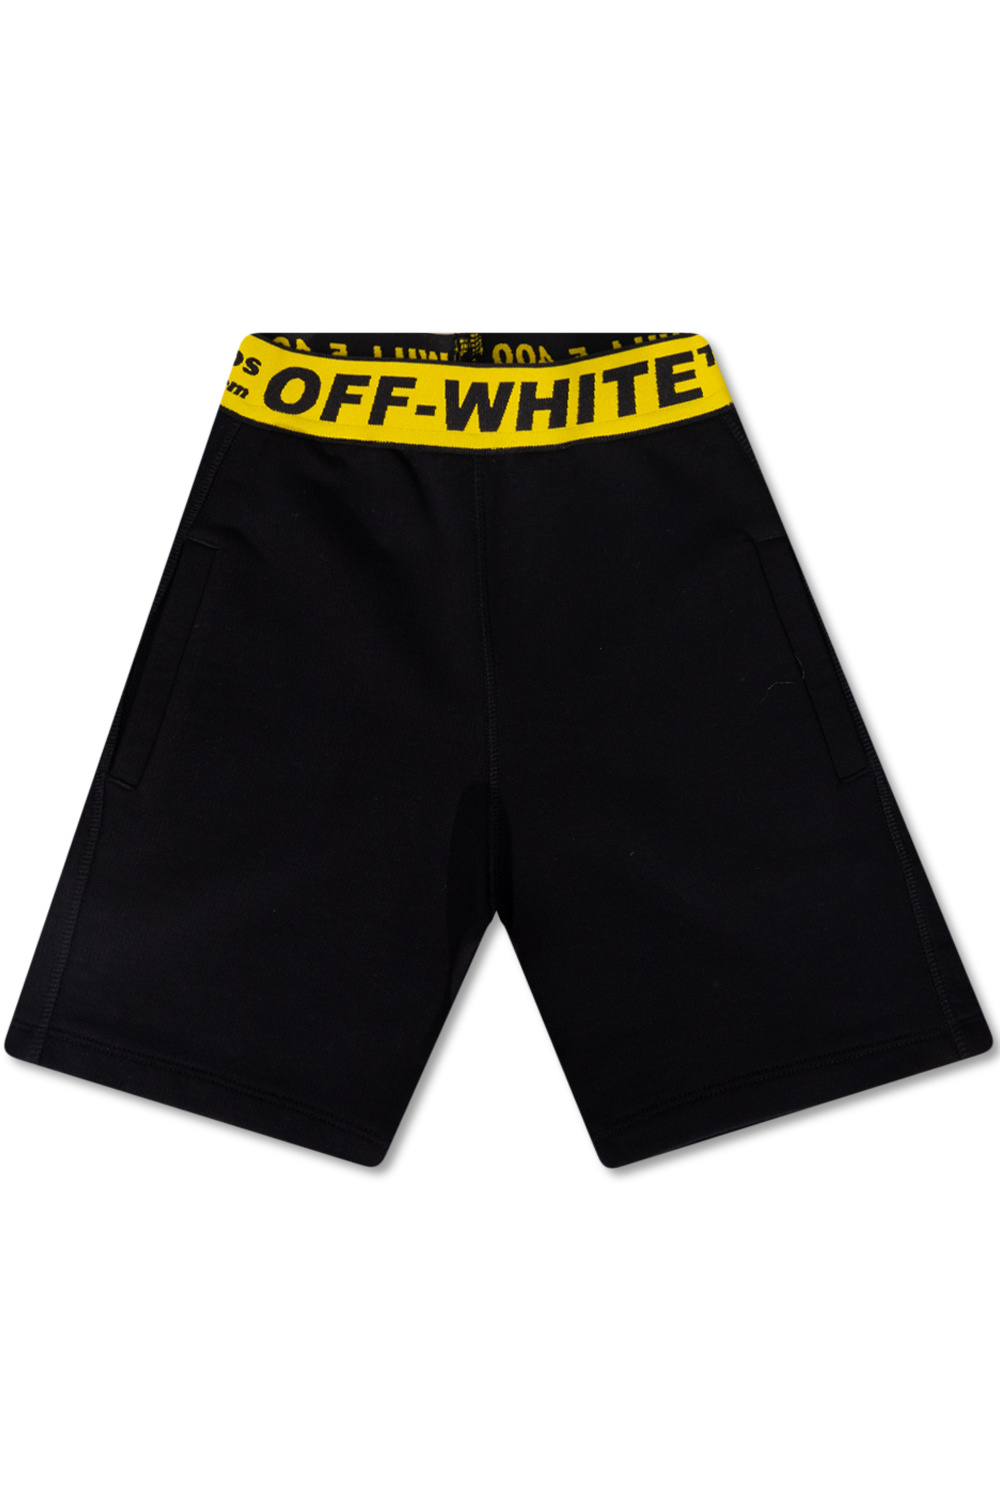 Off-White Kids montane minimus waterproof pants regular leg